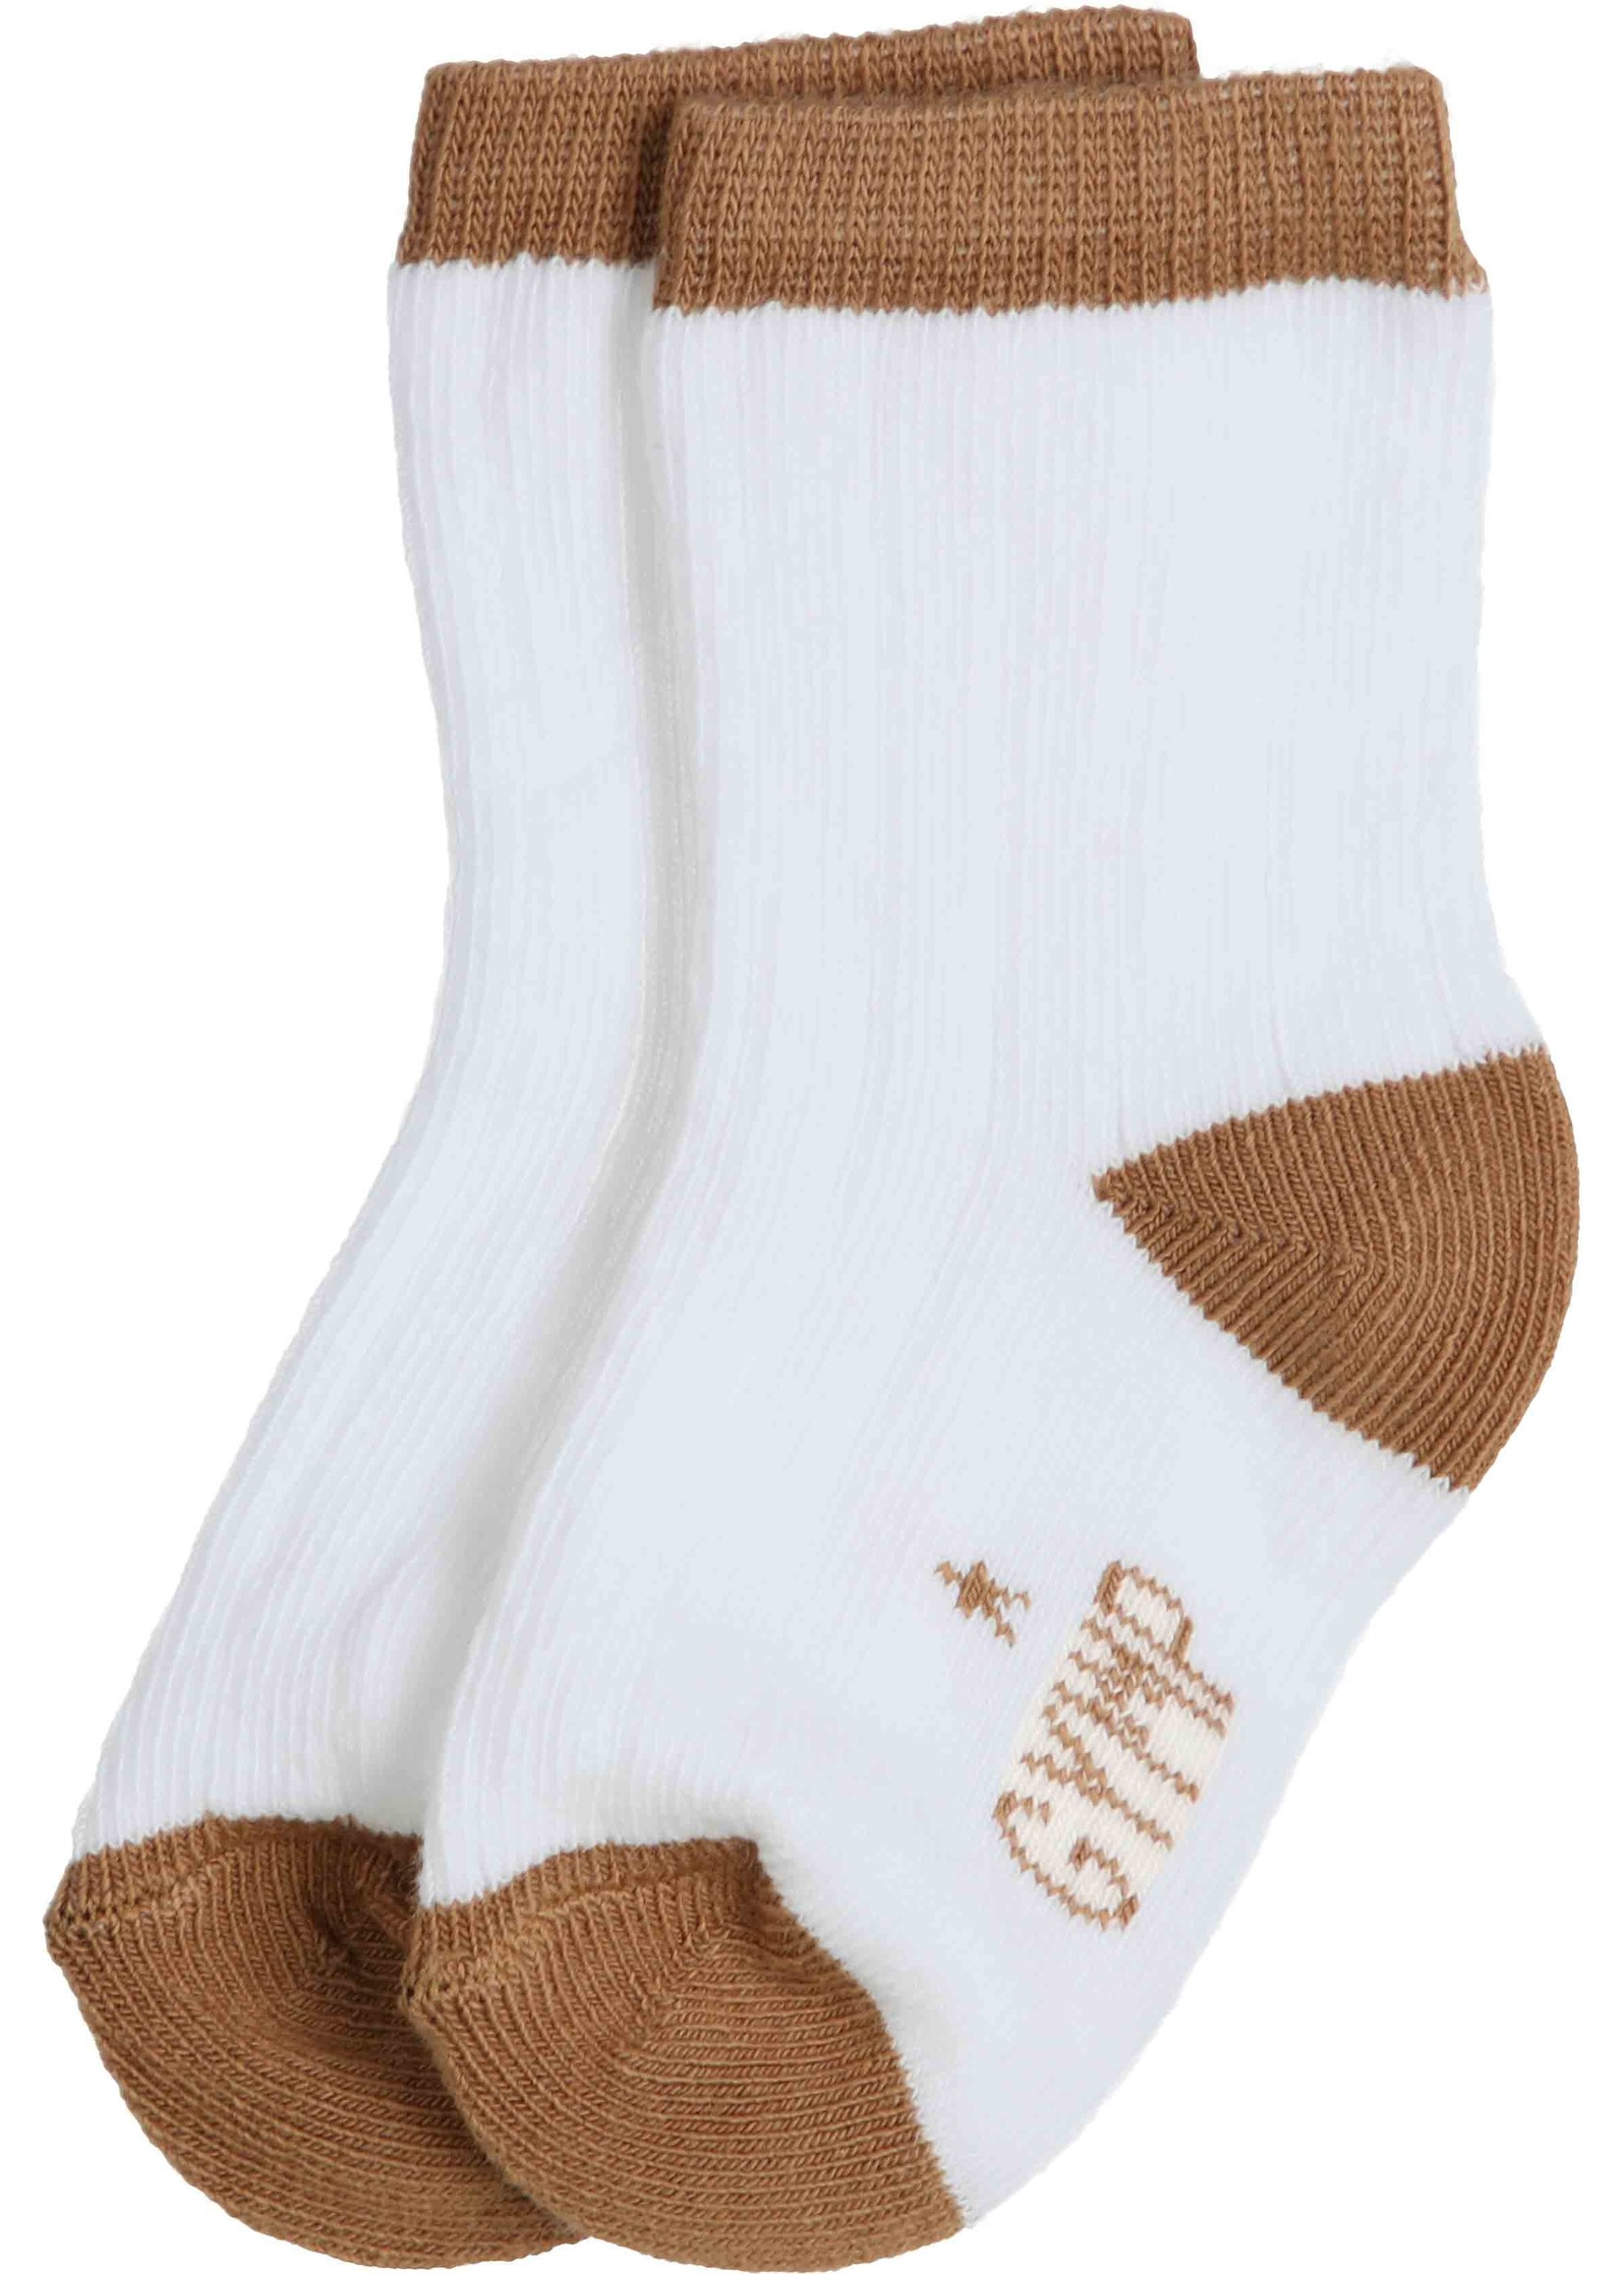 Gymp Socks Kite White - Beige 05-3364-20